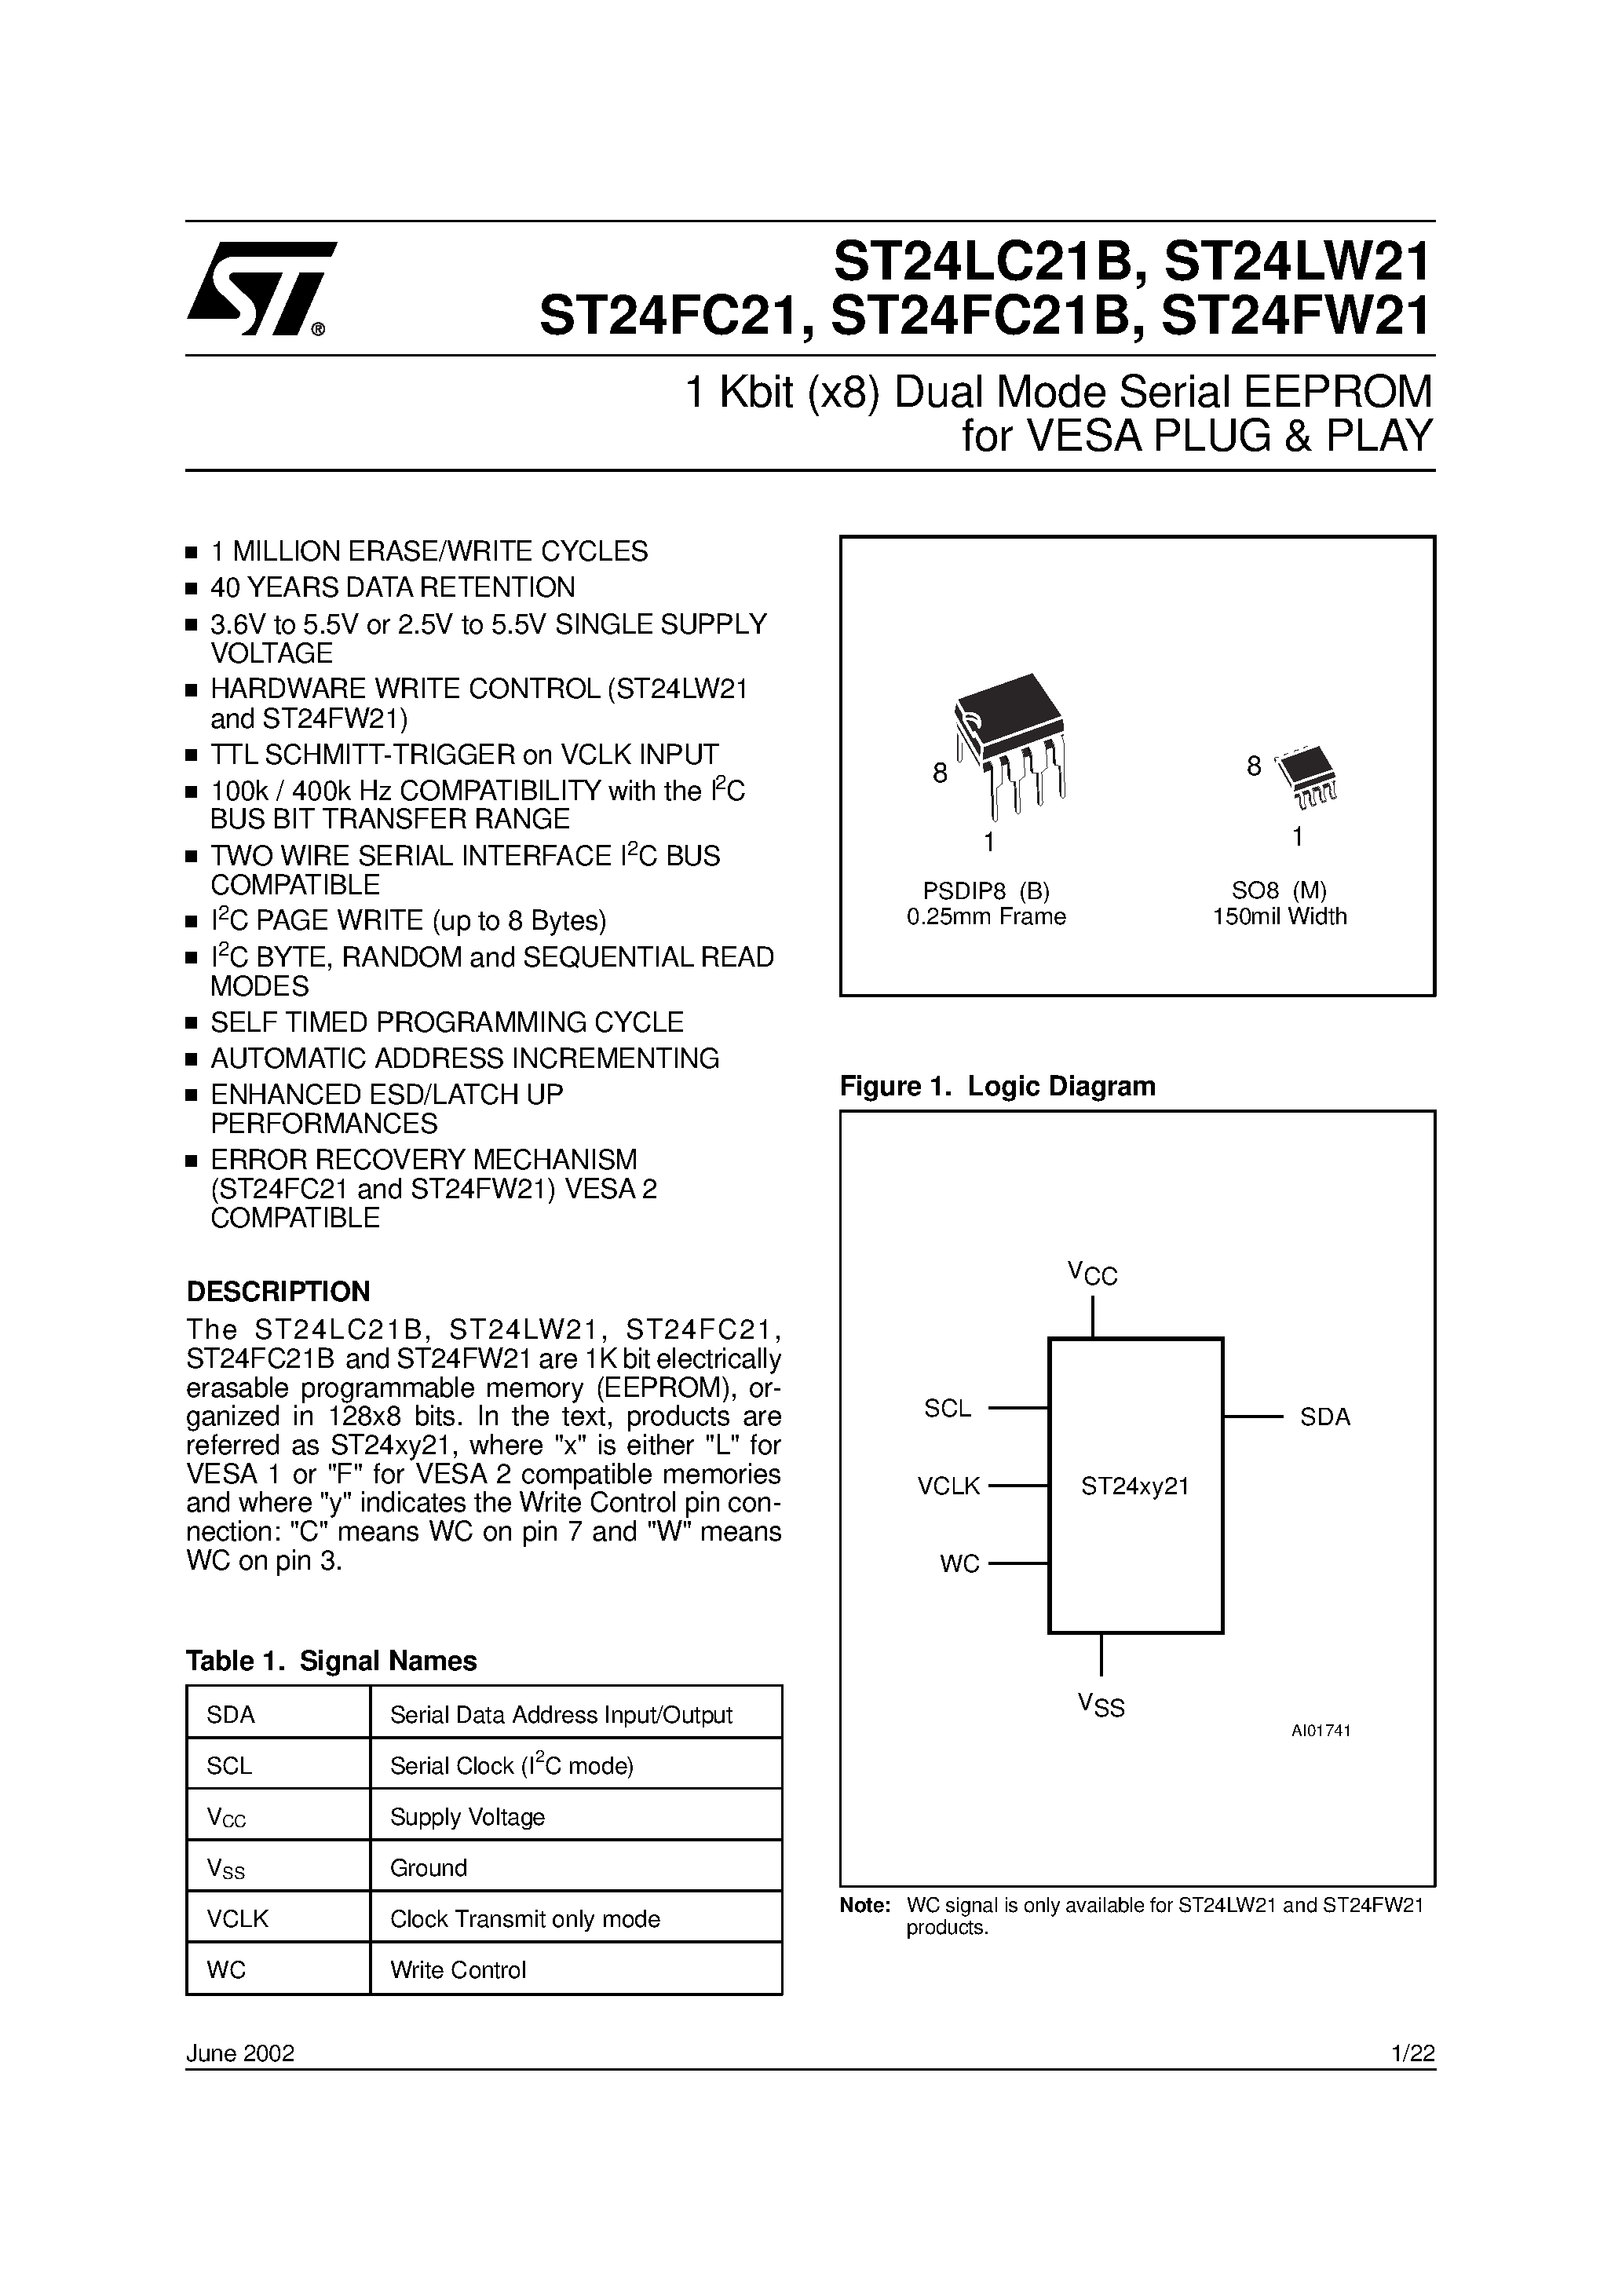 Даташит ST24FC21B - 1 Kbit x8 Dual Mode Serial EEPROM for VESA PLUG & PLAY страница 1